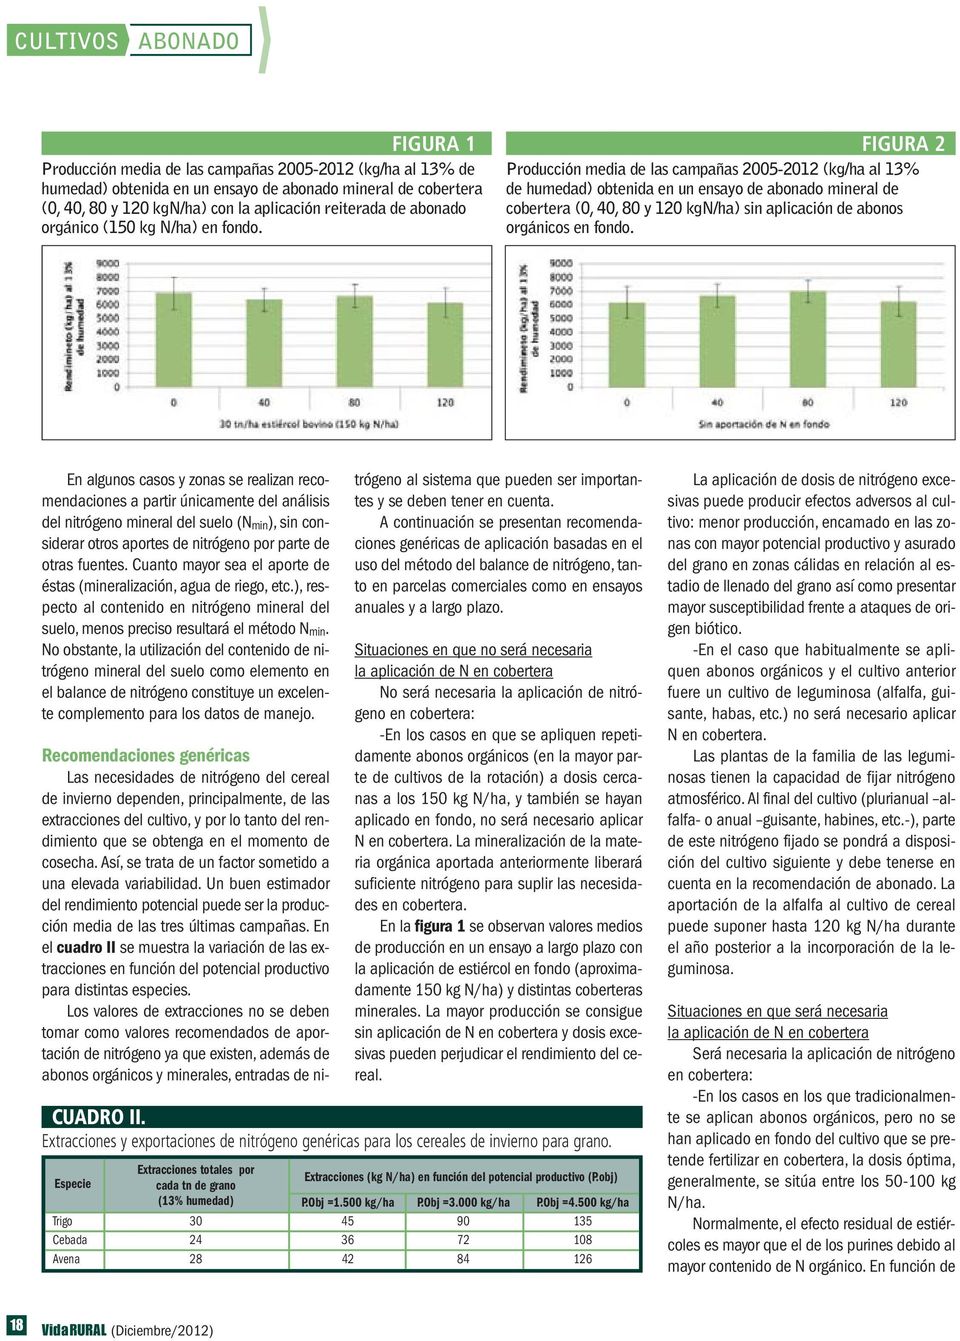 FIGURA 2 Producción media de las campañas 2005-2012 (kg/ha al 13% de humedad) obtenida en un ensayo de abonado mineral de cobertera (0, 40, 80 y 120 kgn/ha) sin aplicación de abonos orgánicos en